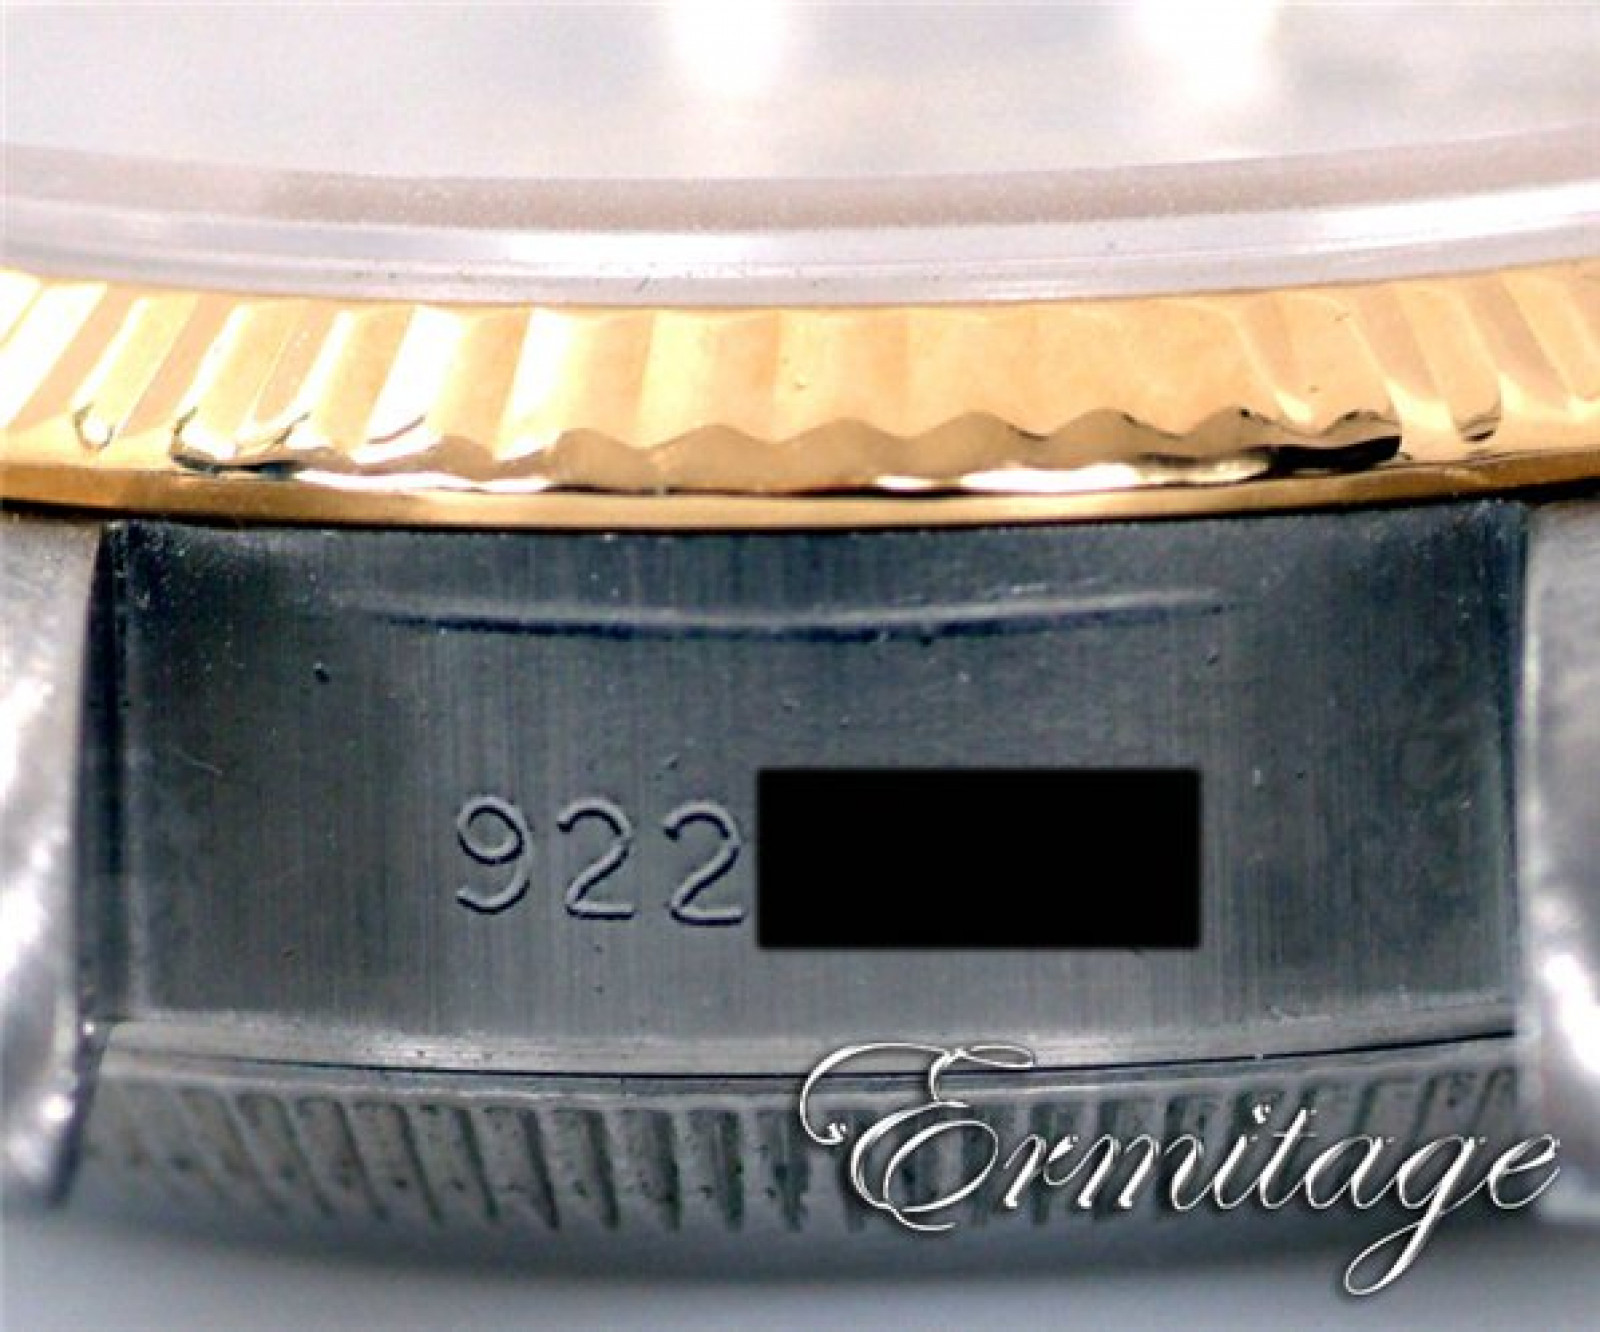 Rolex Datejust 69173 Gold & Steel Silver